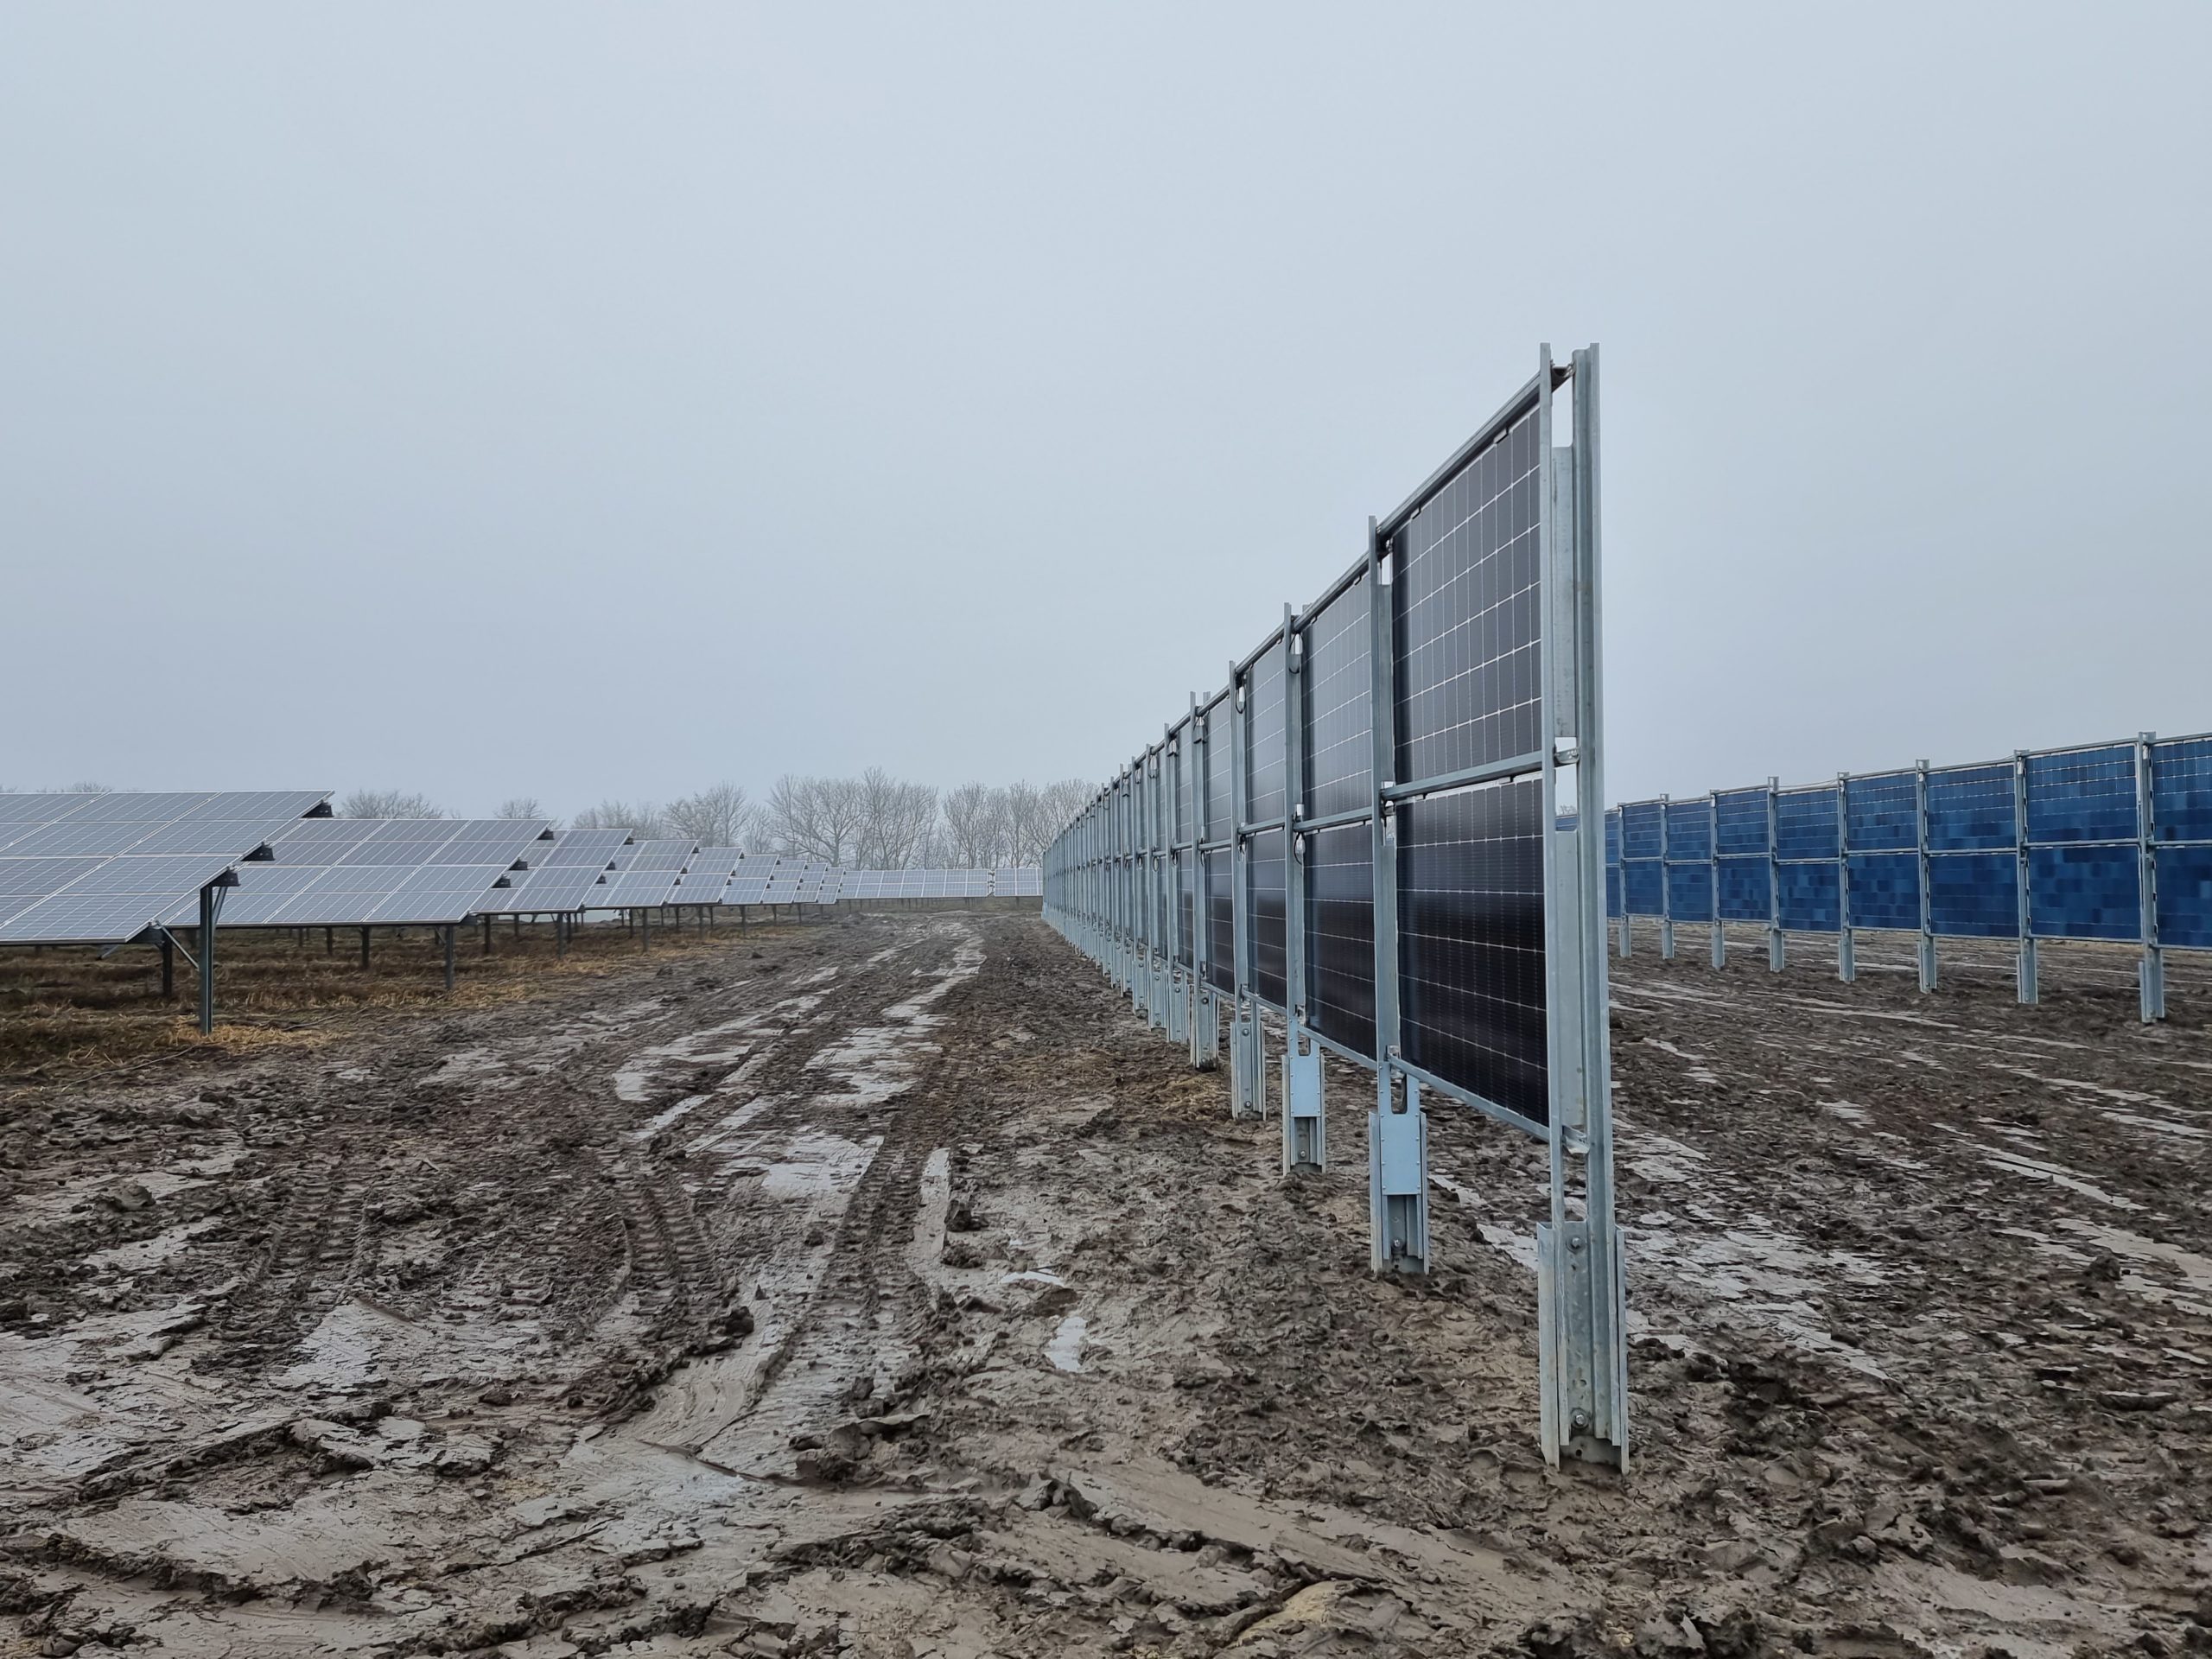 400 vertikale PV-Moduale ermöglichen Ackerbau auf der Anlage © Tech & Nature 